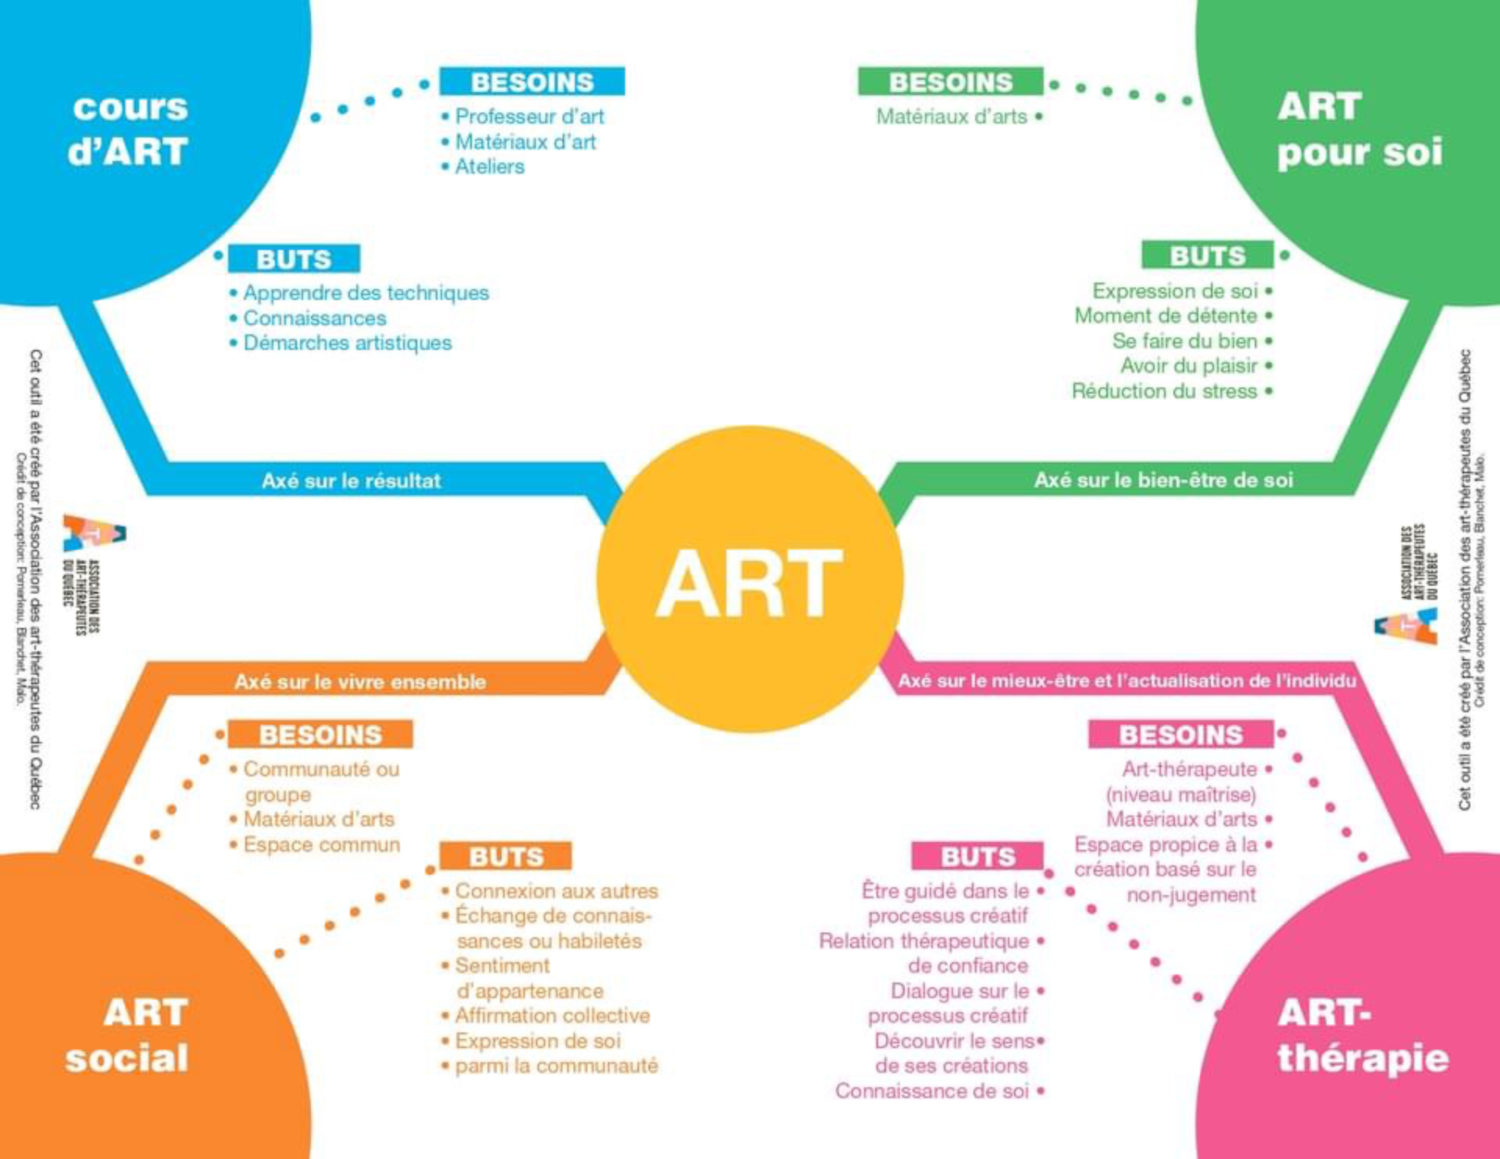 Art-thérapie en infographie